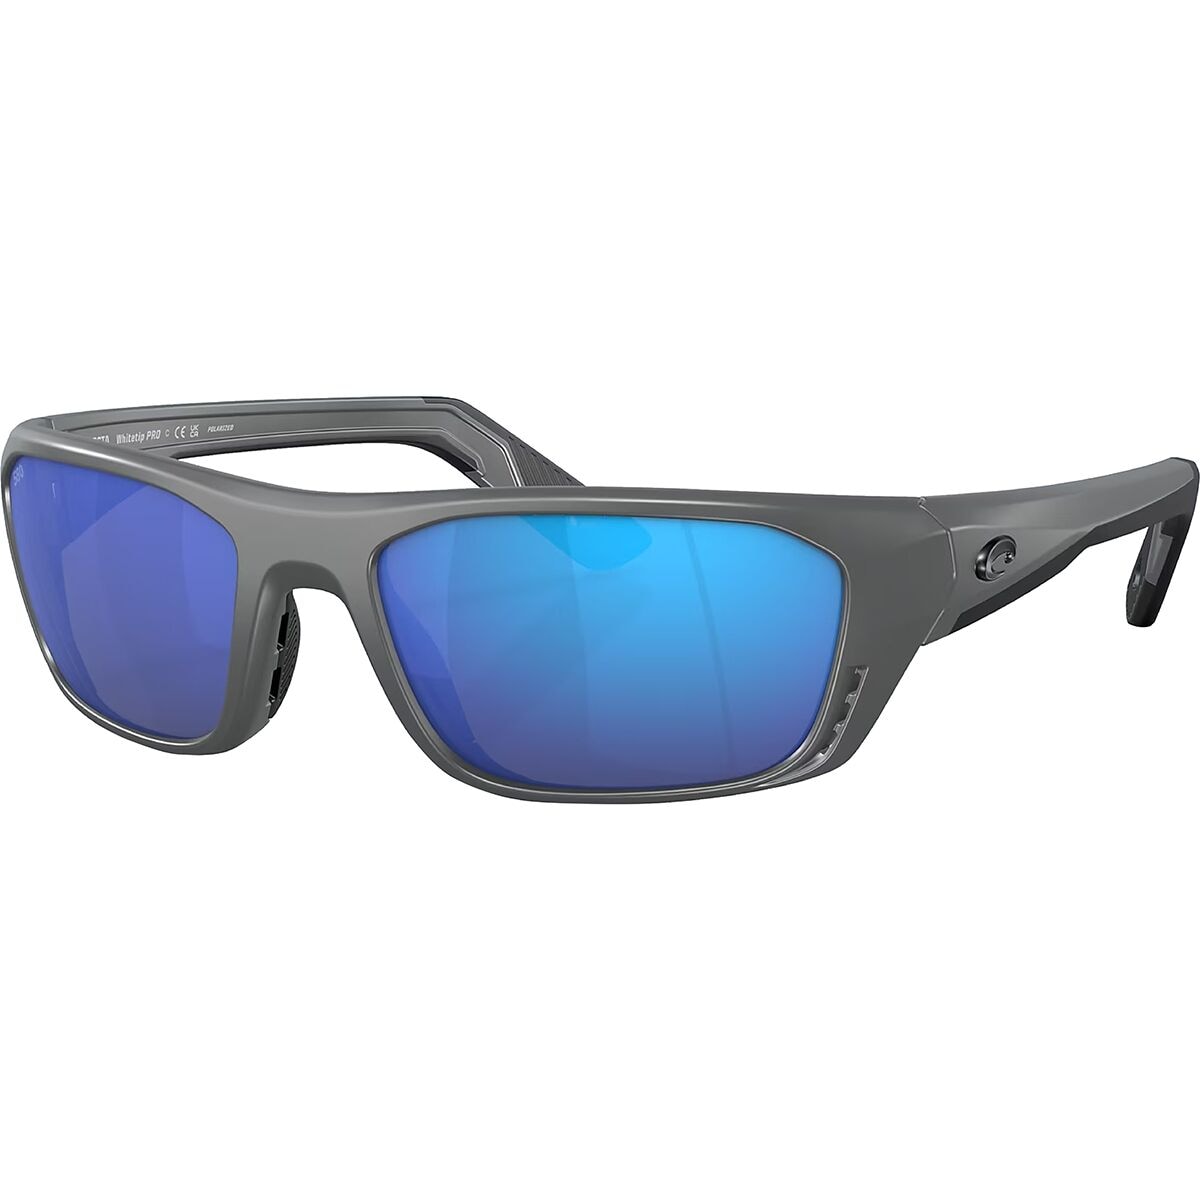 Pre-owned Costa Del Mar Costa Whitetip Pro 580g Polarized Sunglasses In Matte Black/blue Mirror 580g